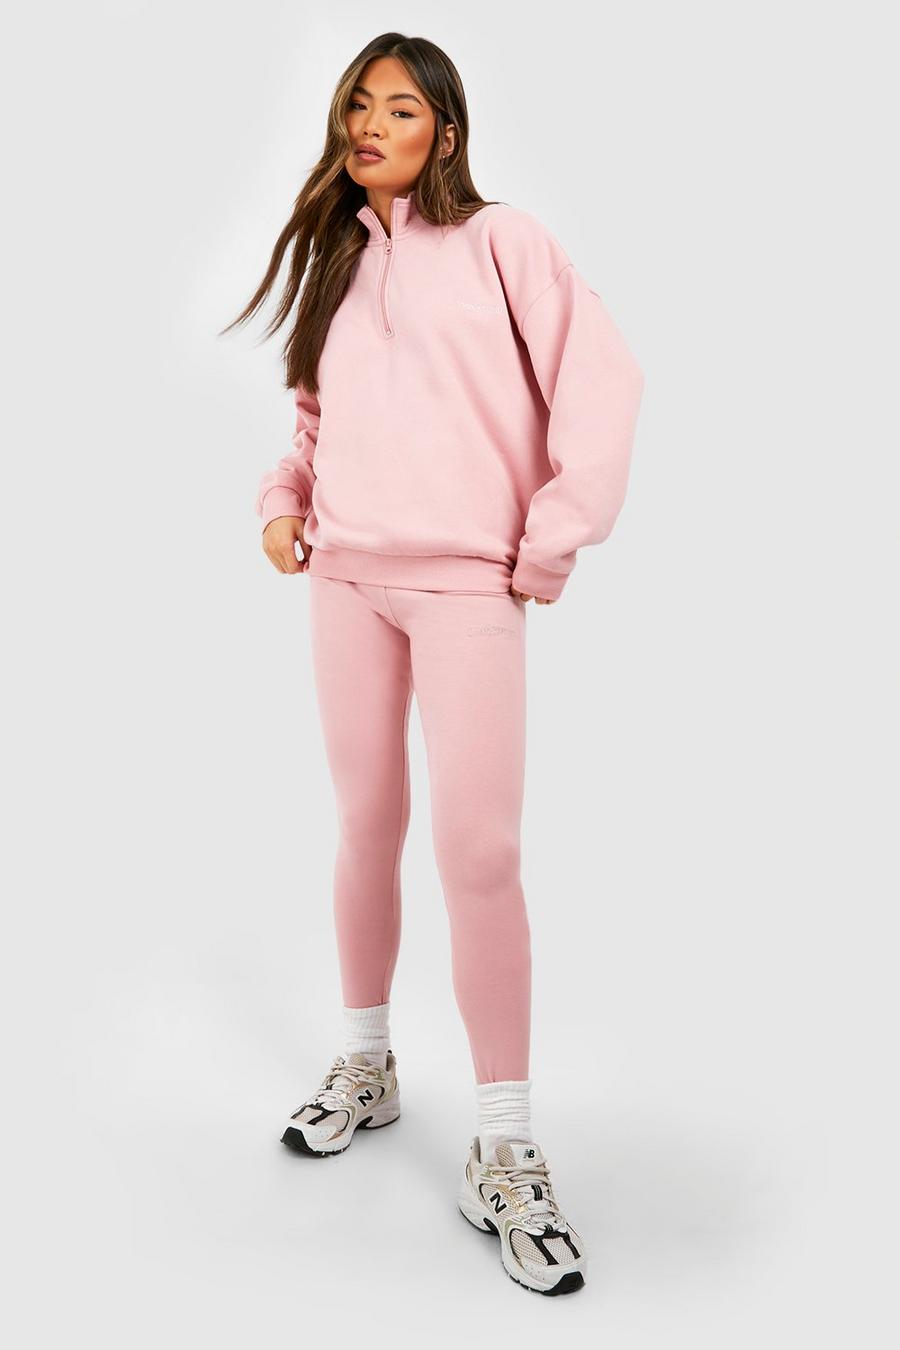 Dusty pink DSGN Studio Half Zip Sweatshirt And Legging Set